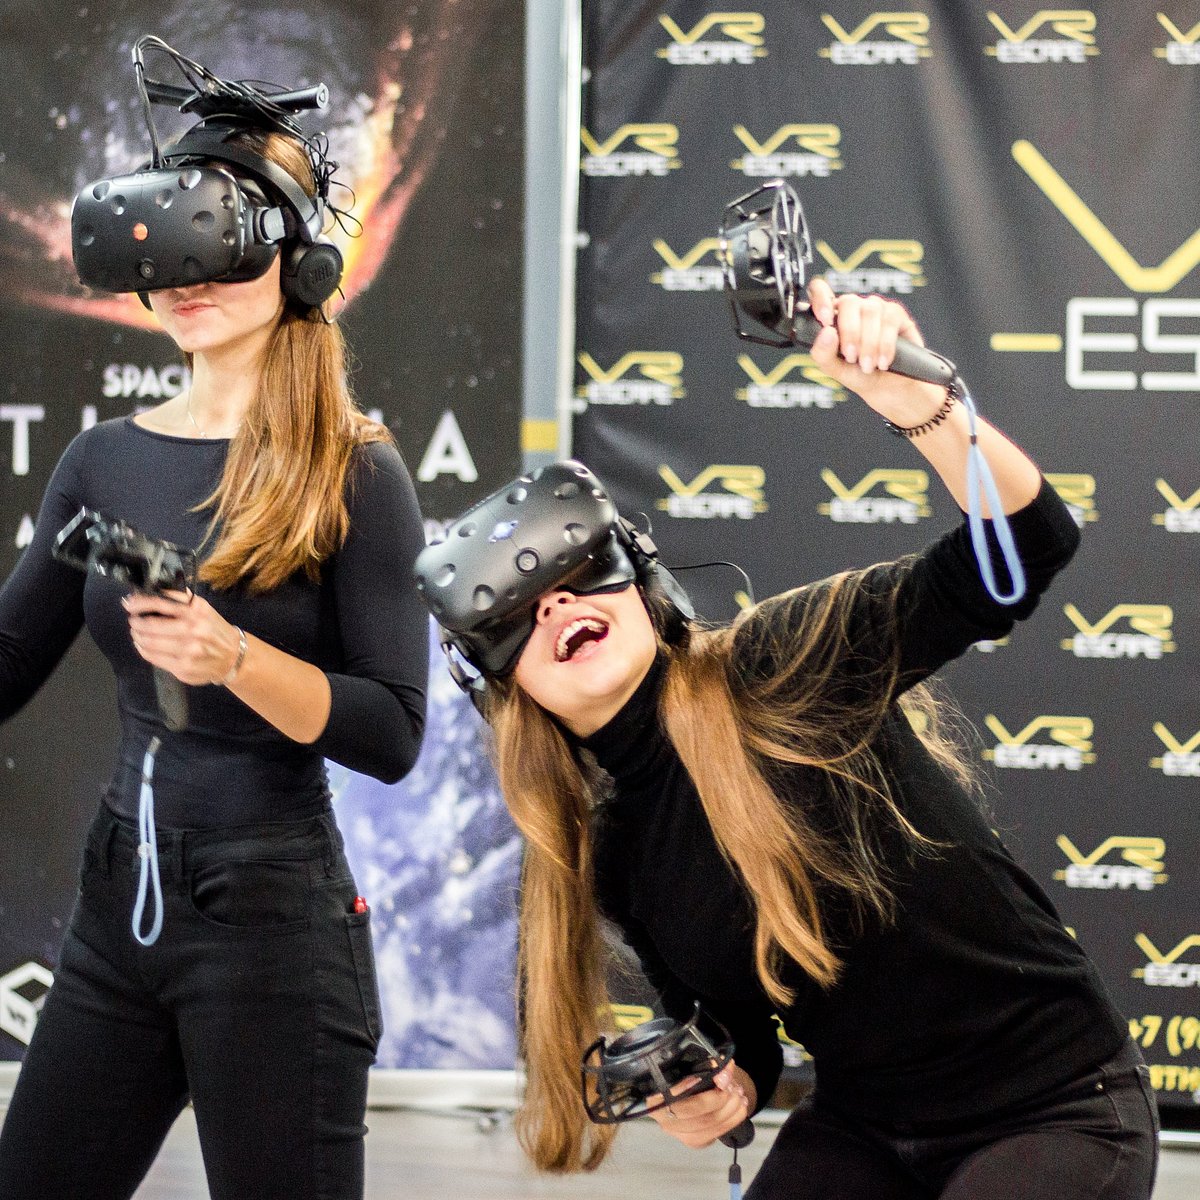 Vr club vrpark. VR Escape. Escape клуб виртуальной реальности. VR Club Москва. Куб виртуальной реальности.